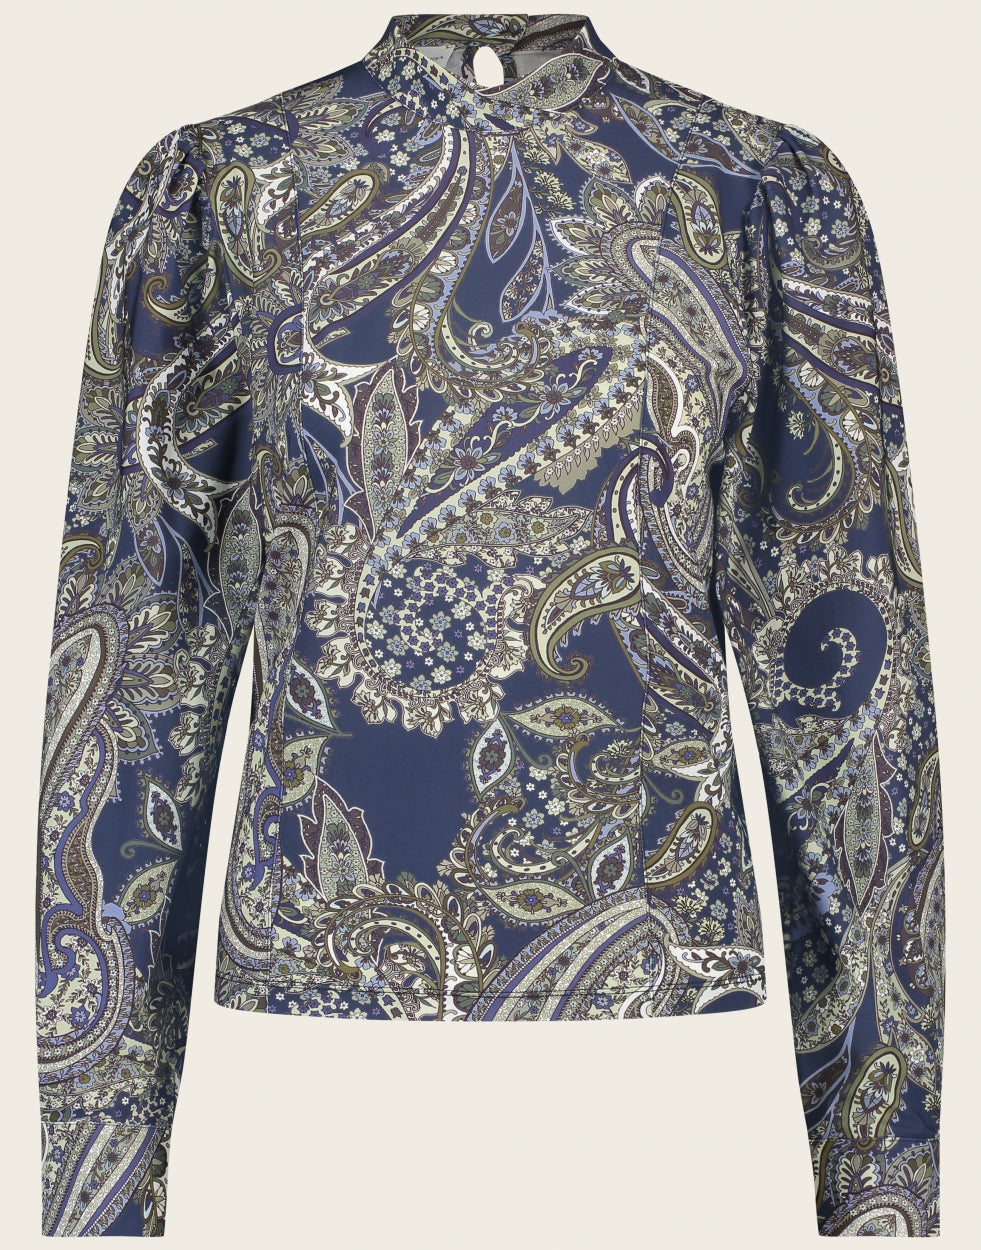 Jane Lushka Top Camila UP62226045 is een blauwe top met Paisley print, heeft lange mouwen met boord en knoopjes. De hals heeft een kleine opstaande kraag en wordt aan de achterkant gesloten met een knoopje. Deze prachtige top/blouse is van de bekende travelstof.